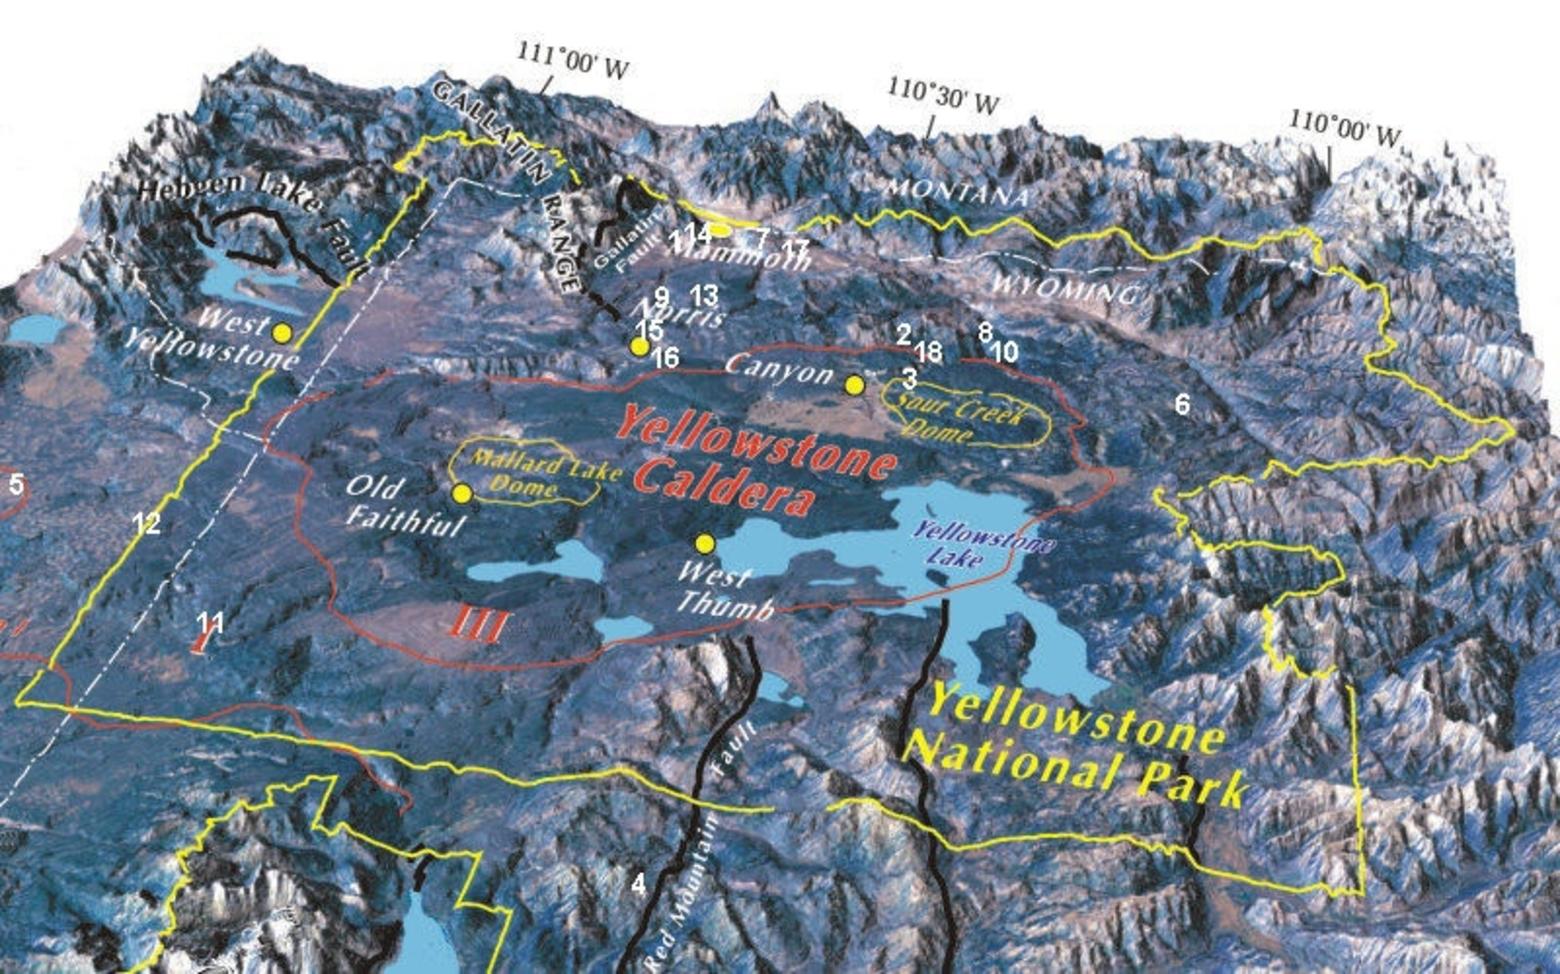 Map courtesy United States Geological Survey